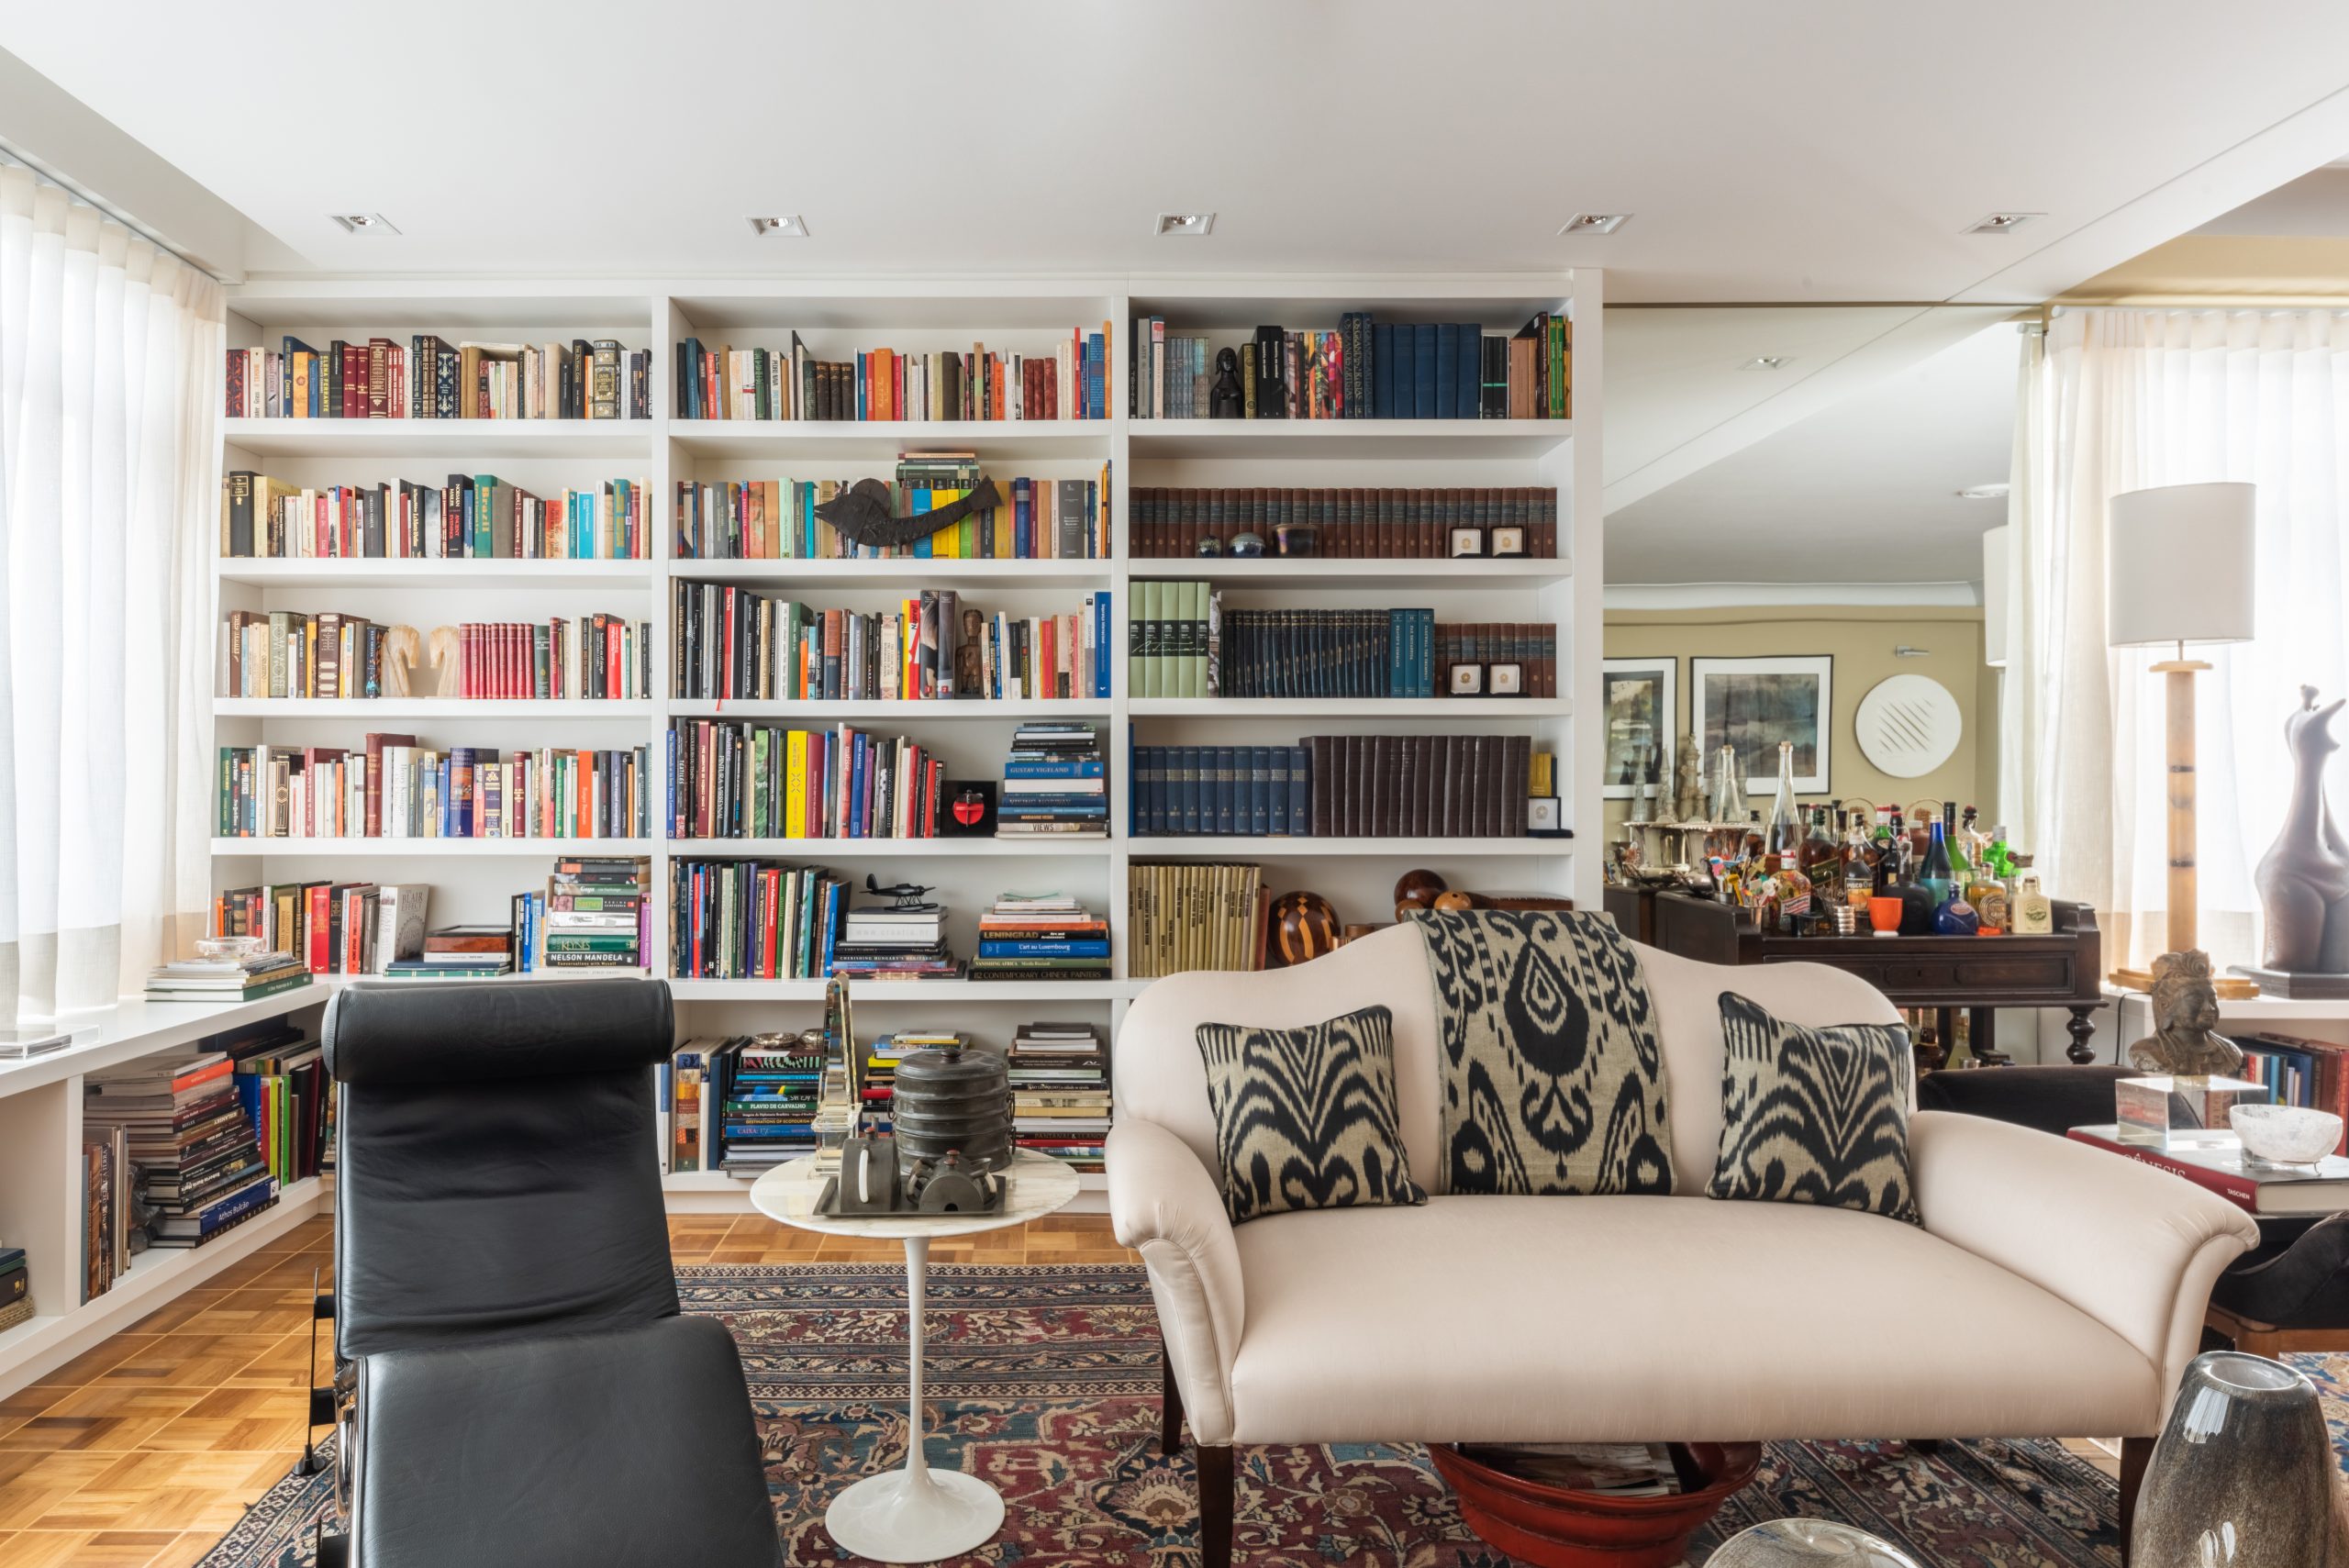 Na sala de estar deste apartamento, o arquiteto Bruno Moraes optou pelo uso de pinos invisíveis para criar o efeito de prateleiras e nicho flutuantes, proporcionando um visual moderno e elegante ao espaço | Projeto do BMA Studio | Foto: Guilherme Pucci
